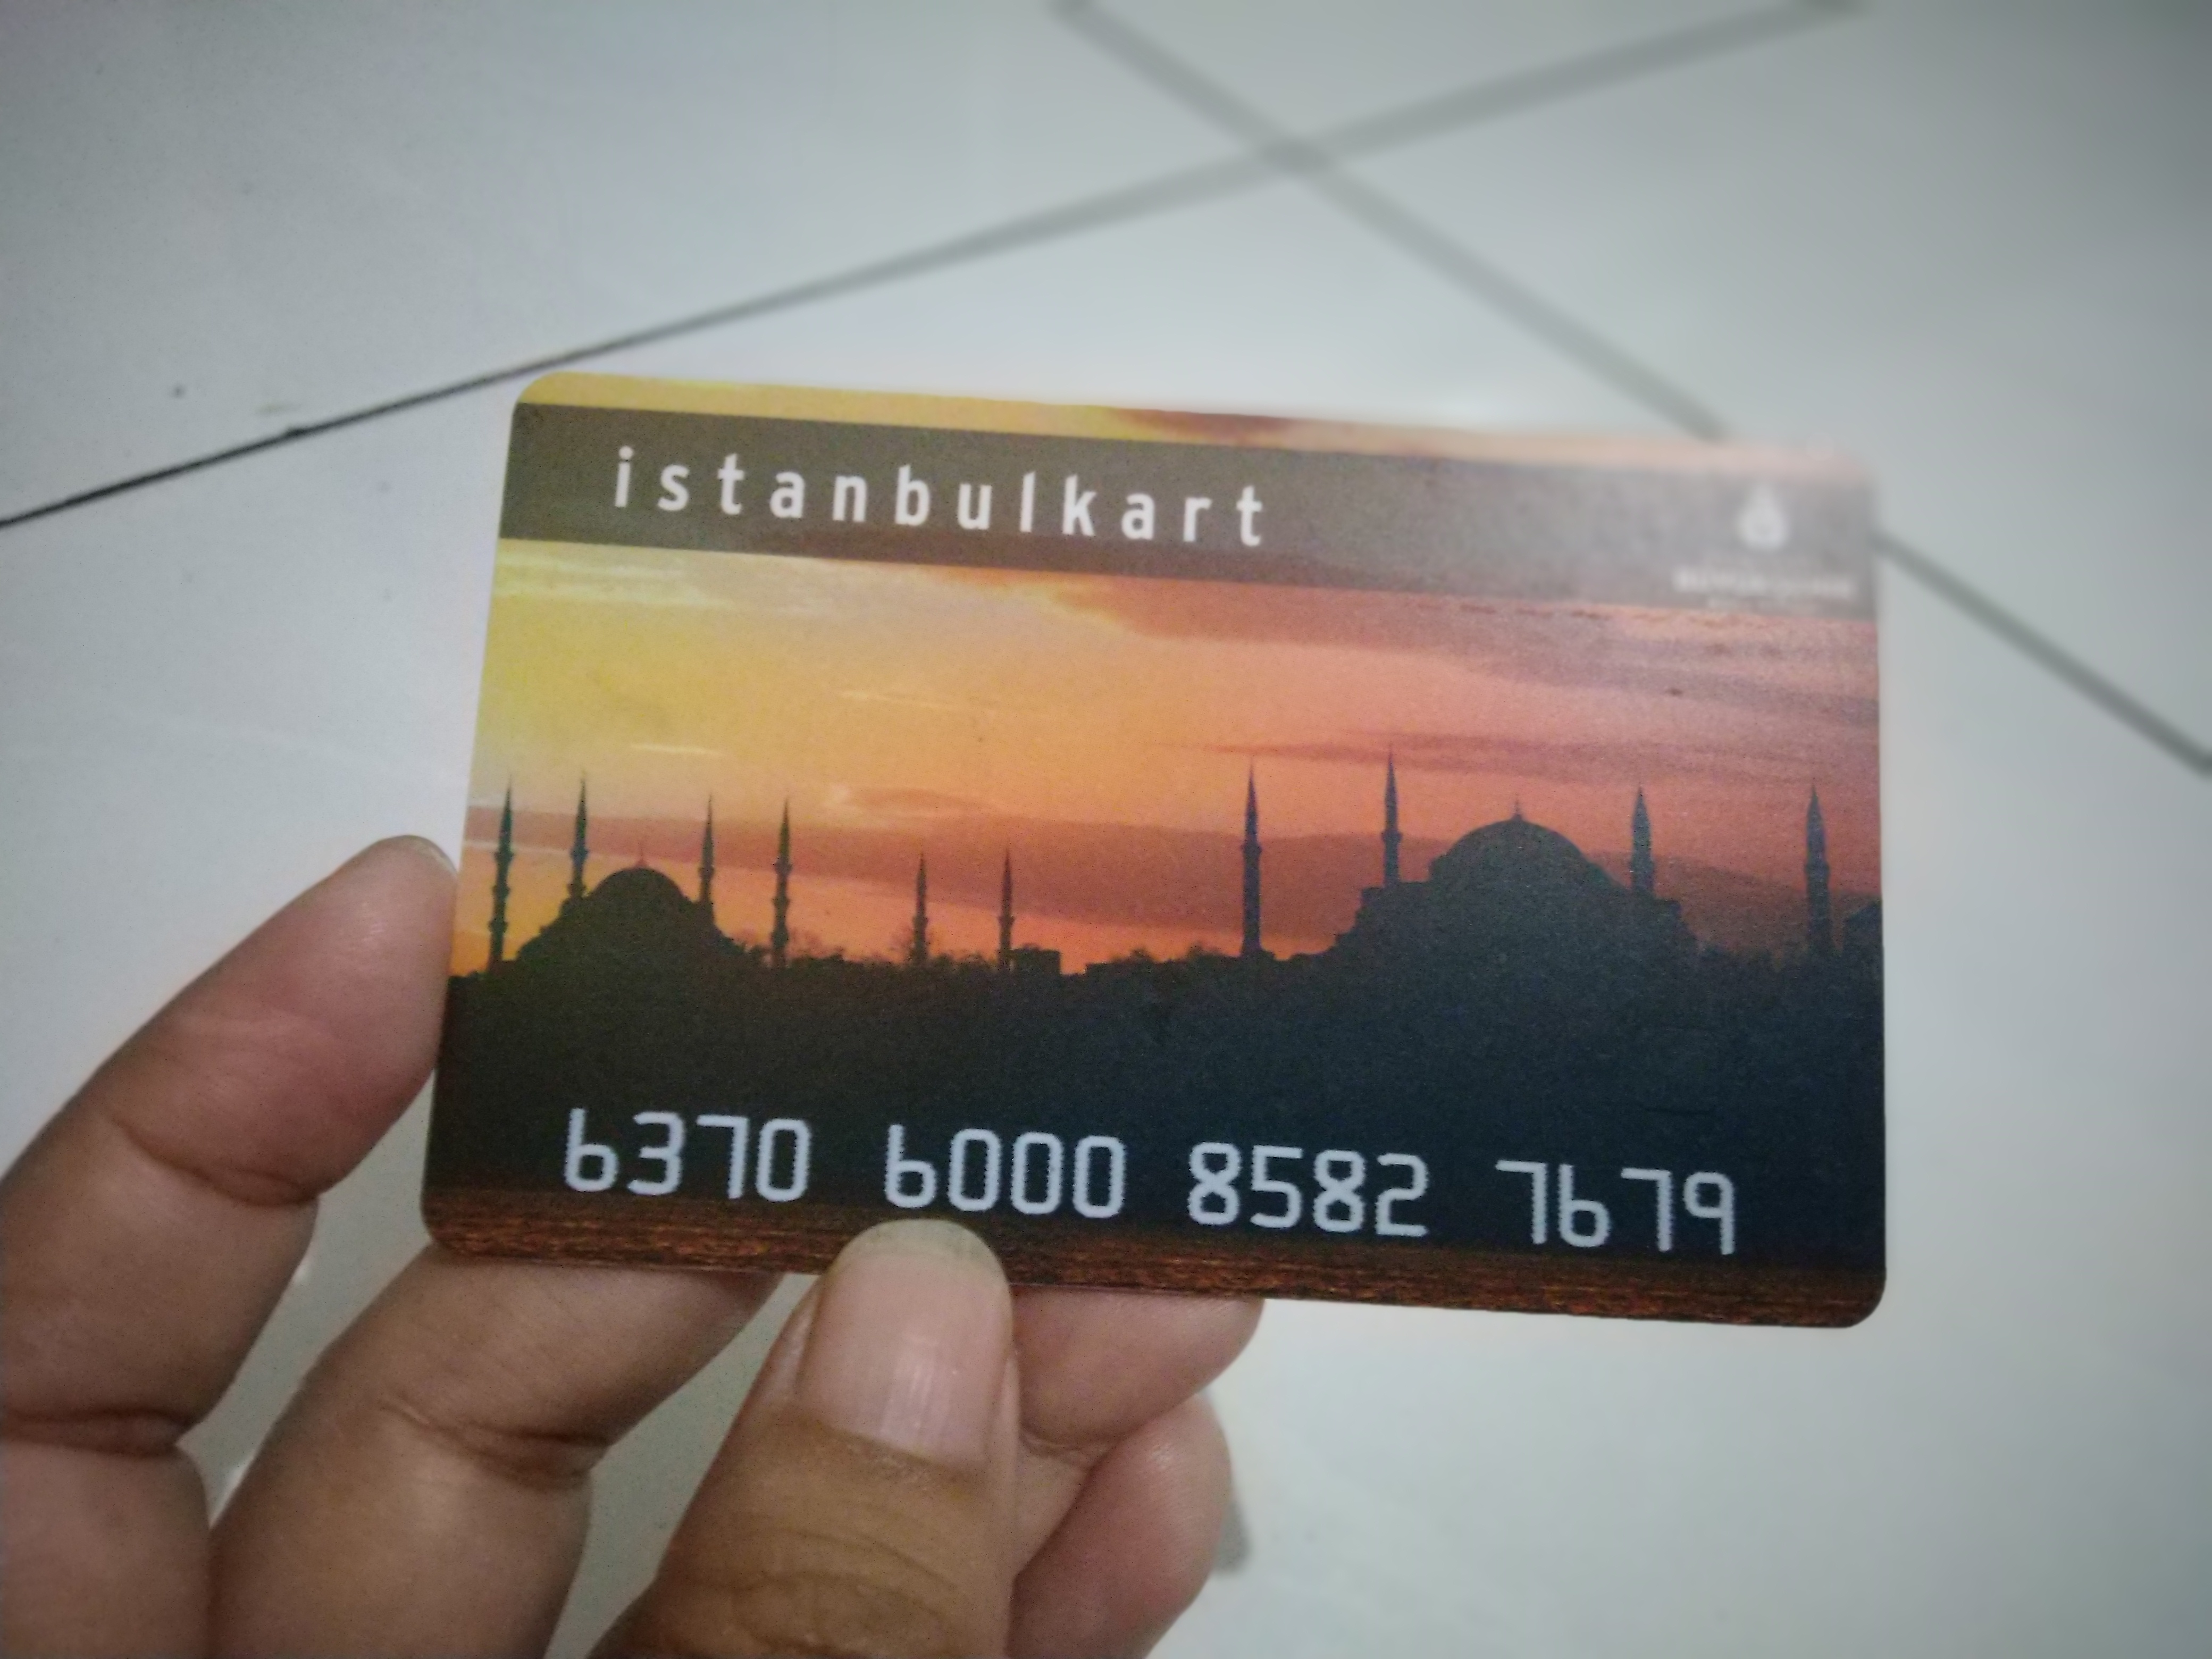 Keliling Kota Istanbul Murah dengan Kartu Istanbulkart